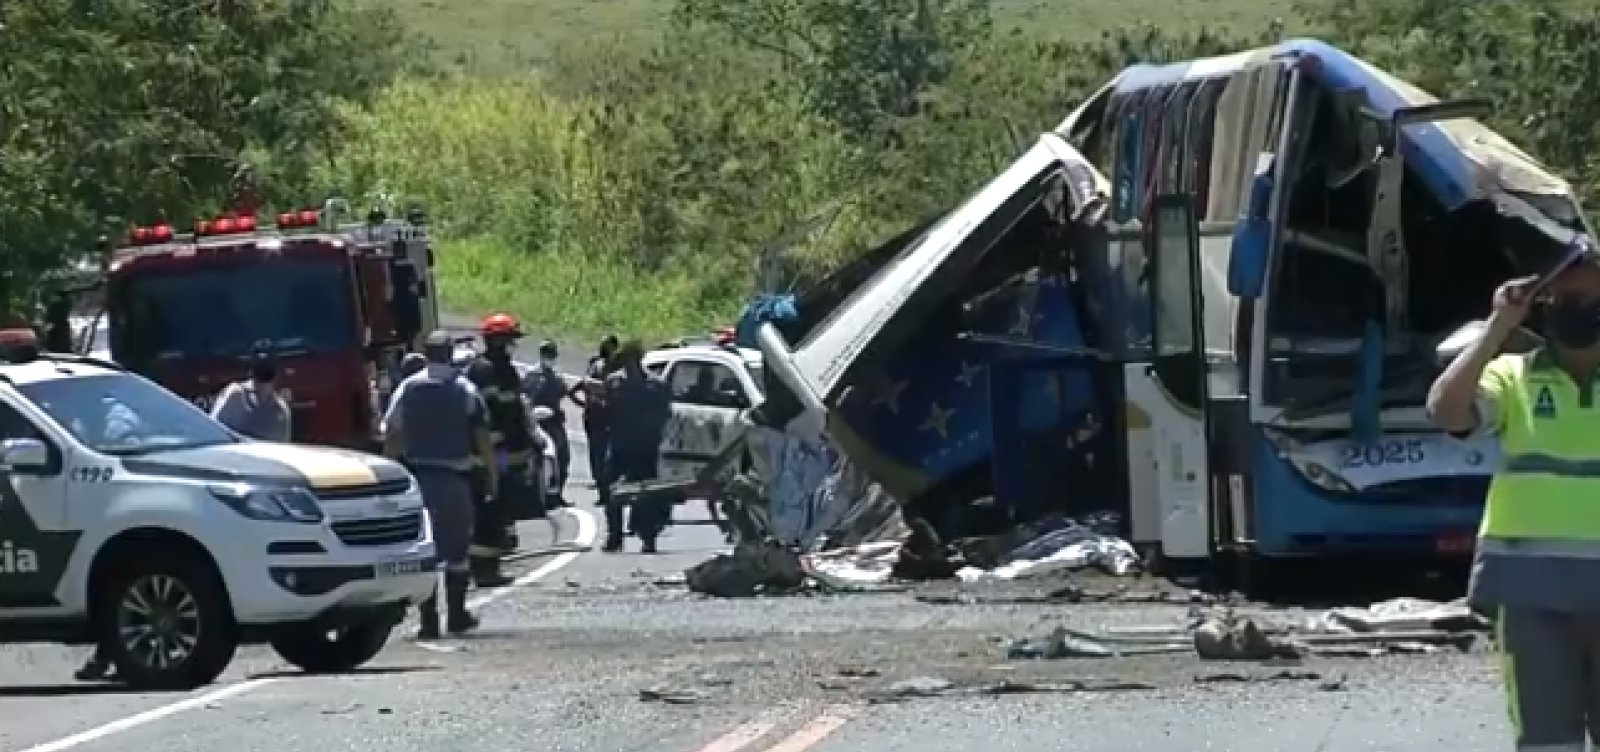 [Acidente em rodovia de SP deixa 40 mortos e 11 feridos, diz PM]